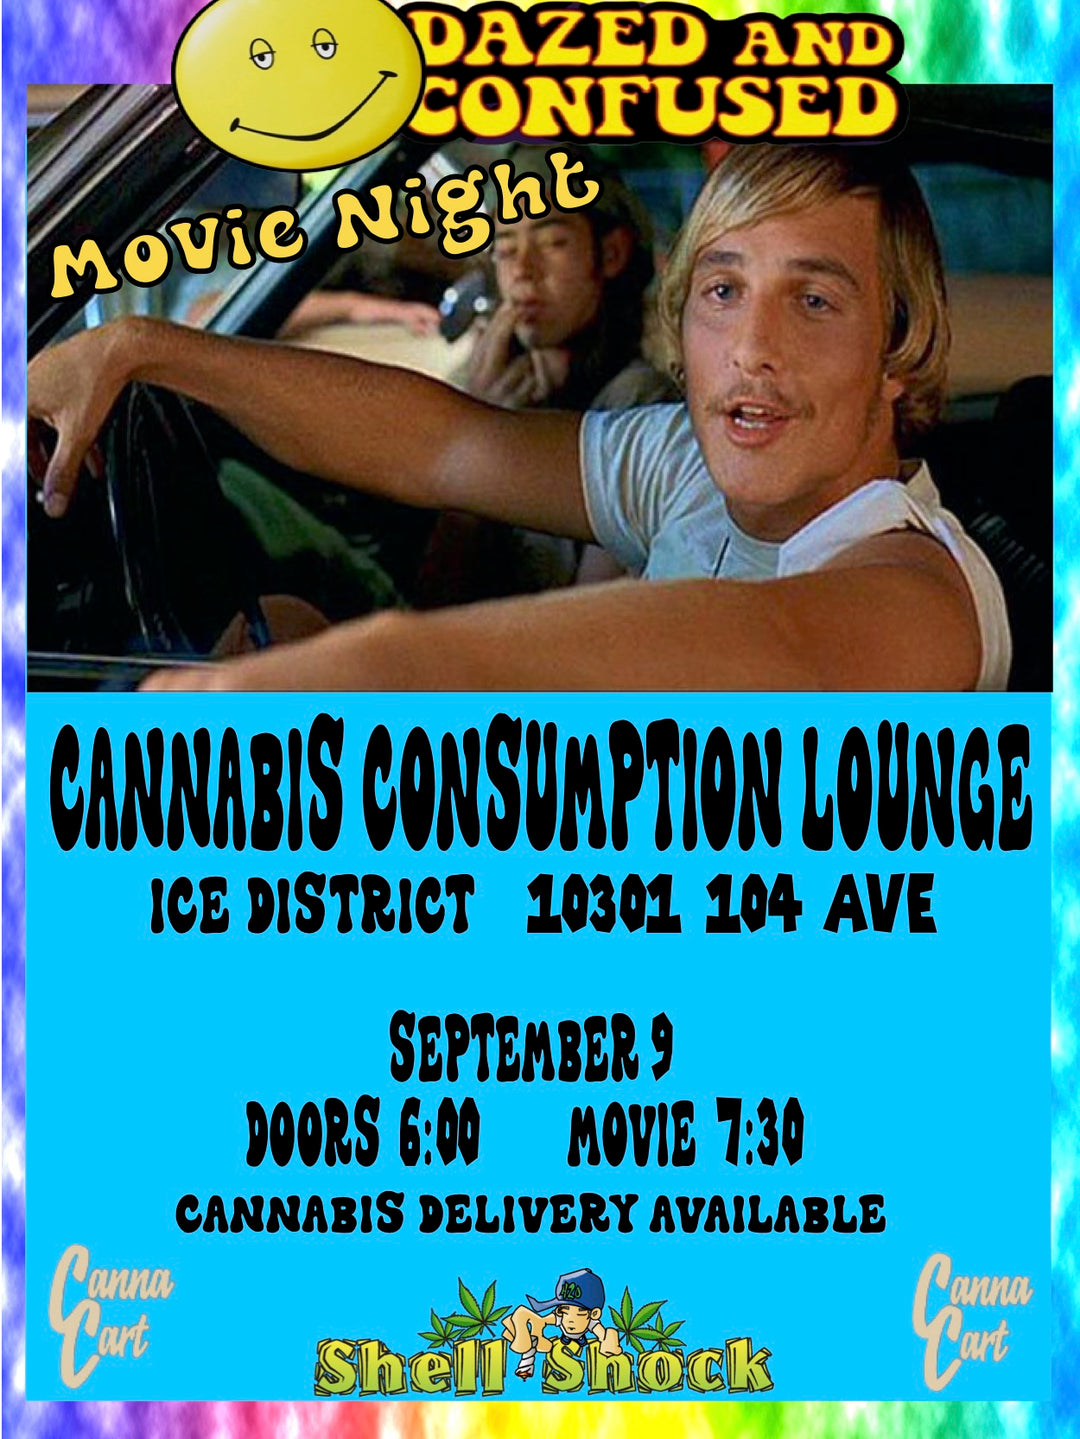 Cannabis Movie Night